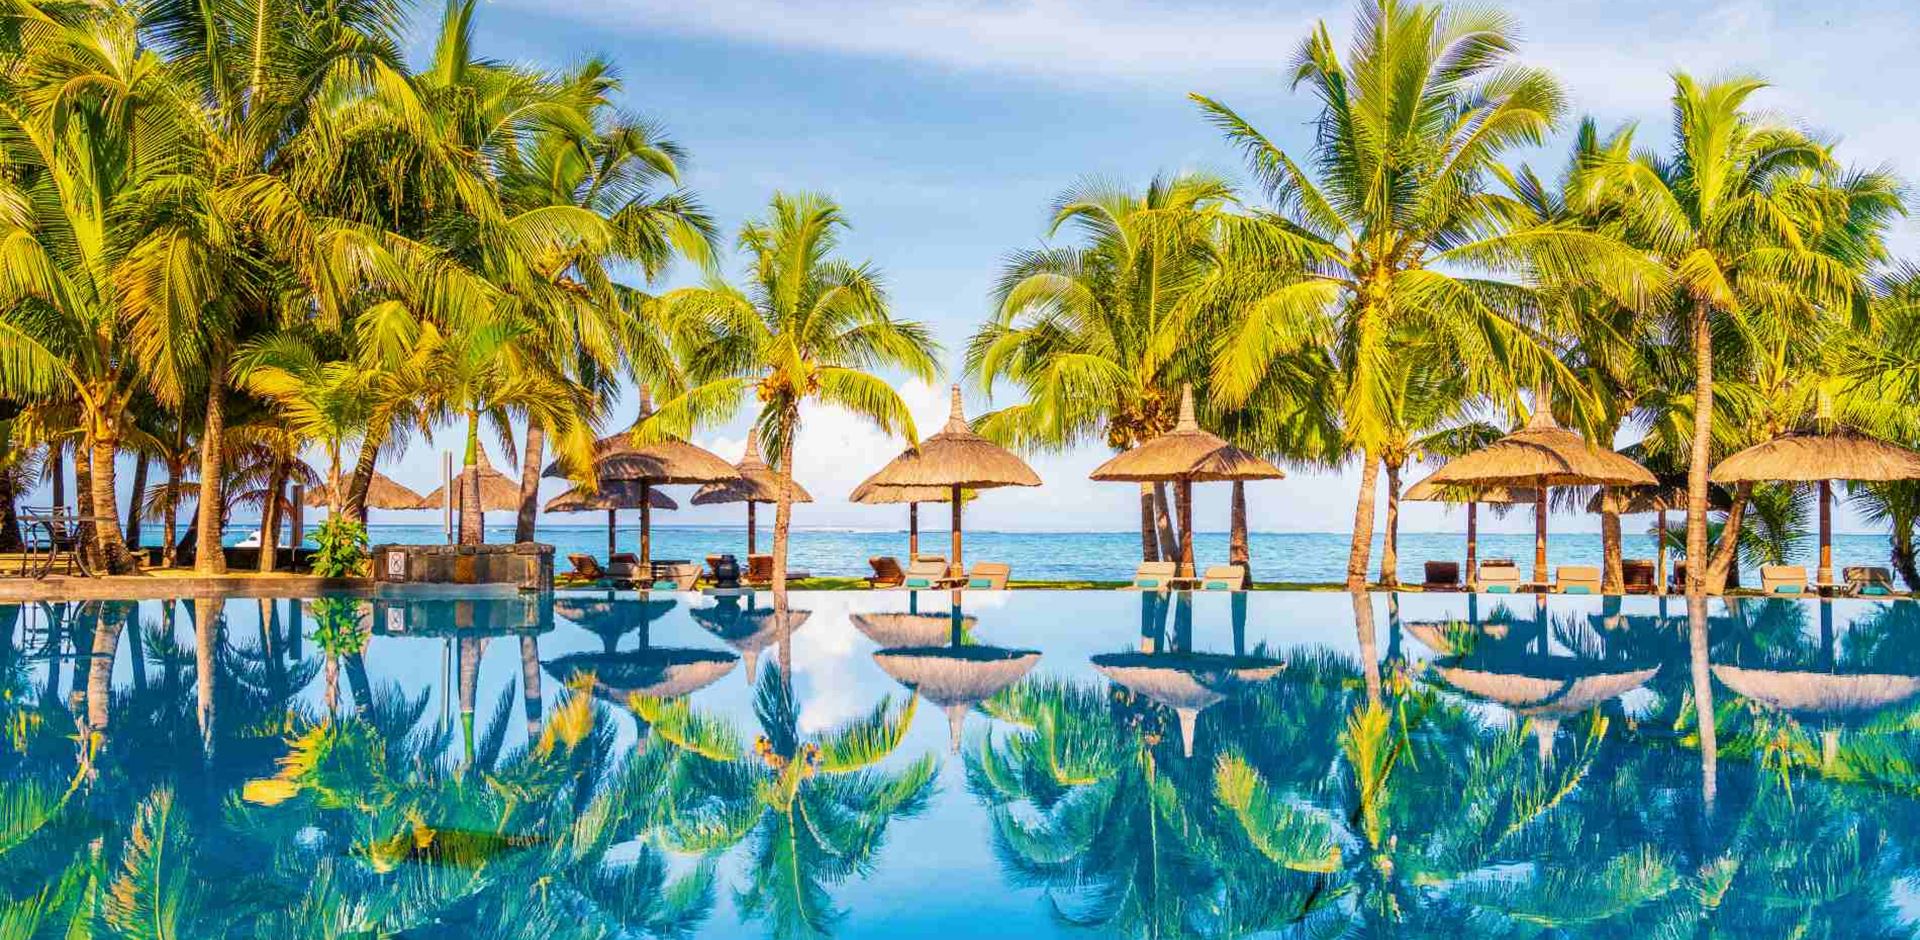 Rejser til Mauritius, Dinarobin Beachcomber Golf Resort & Spa, Det smukke poolområde